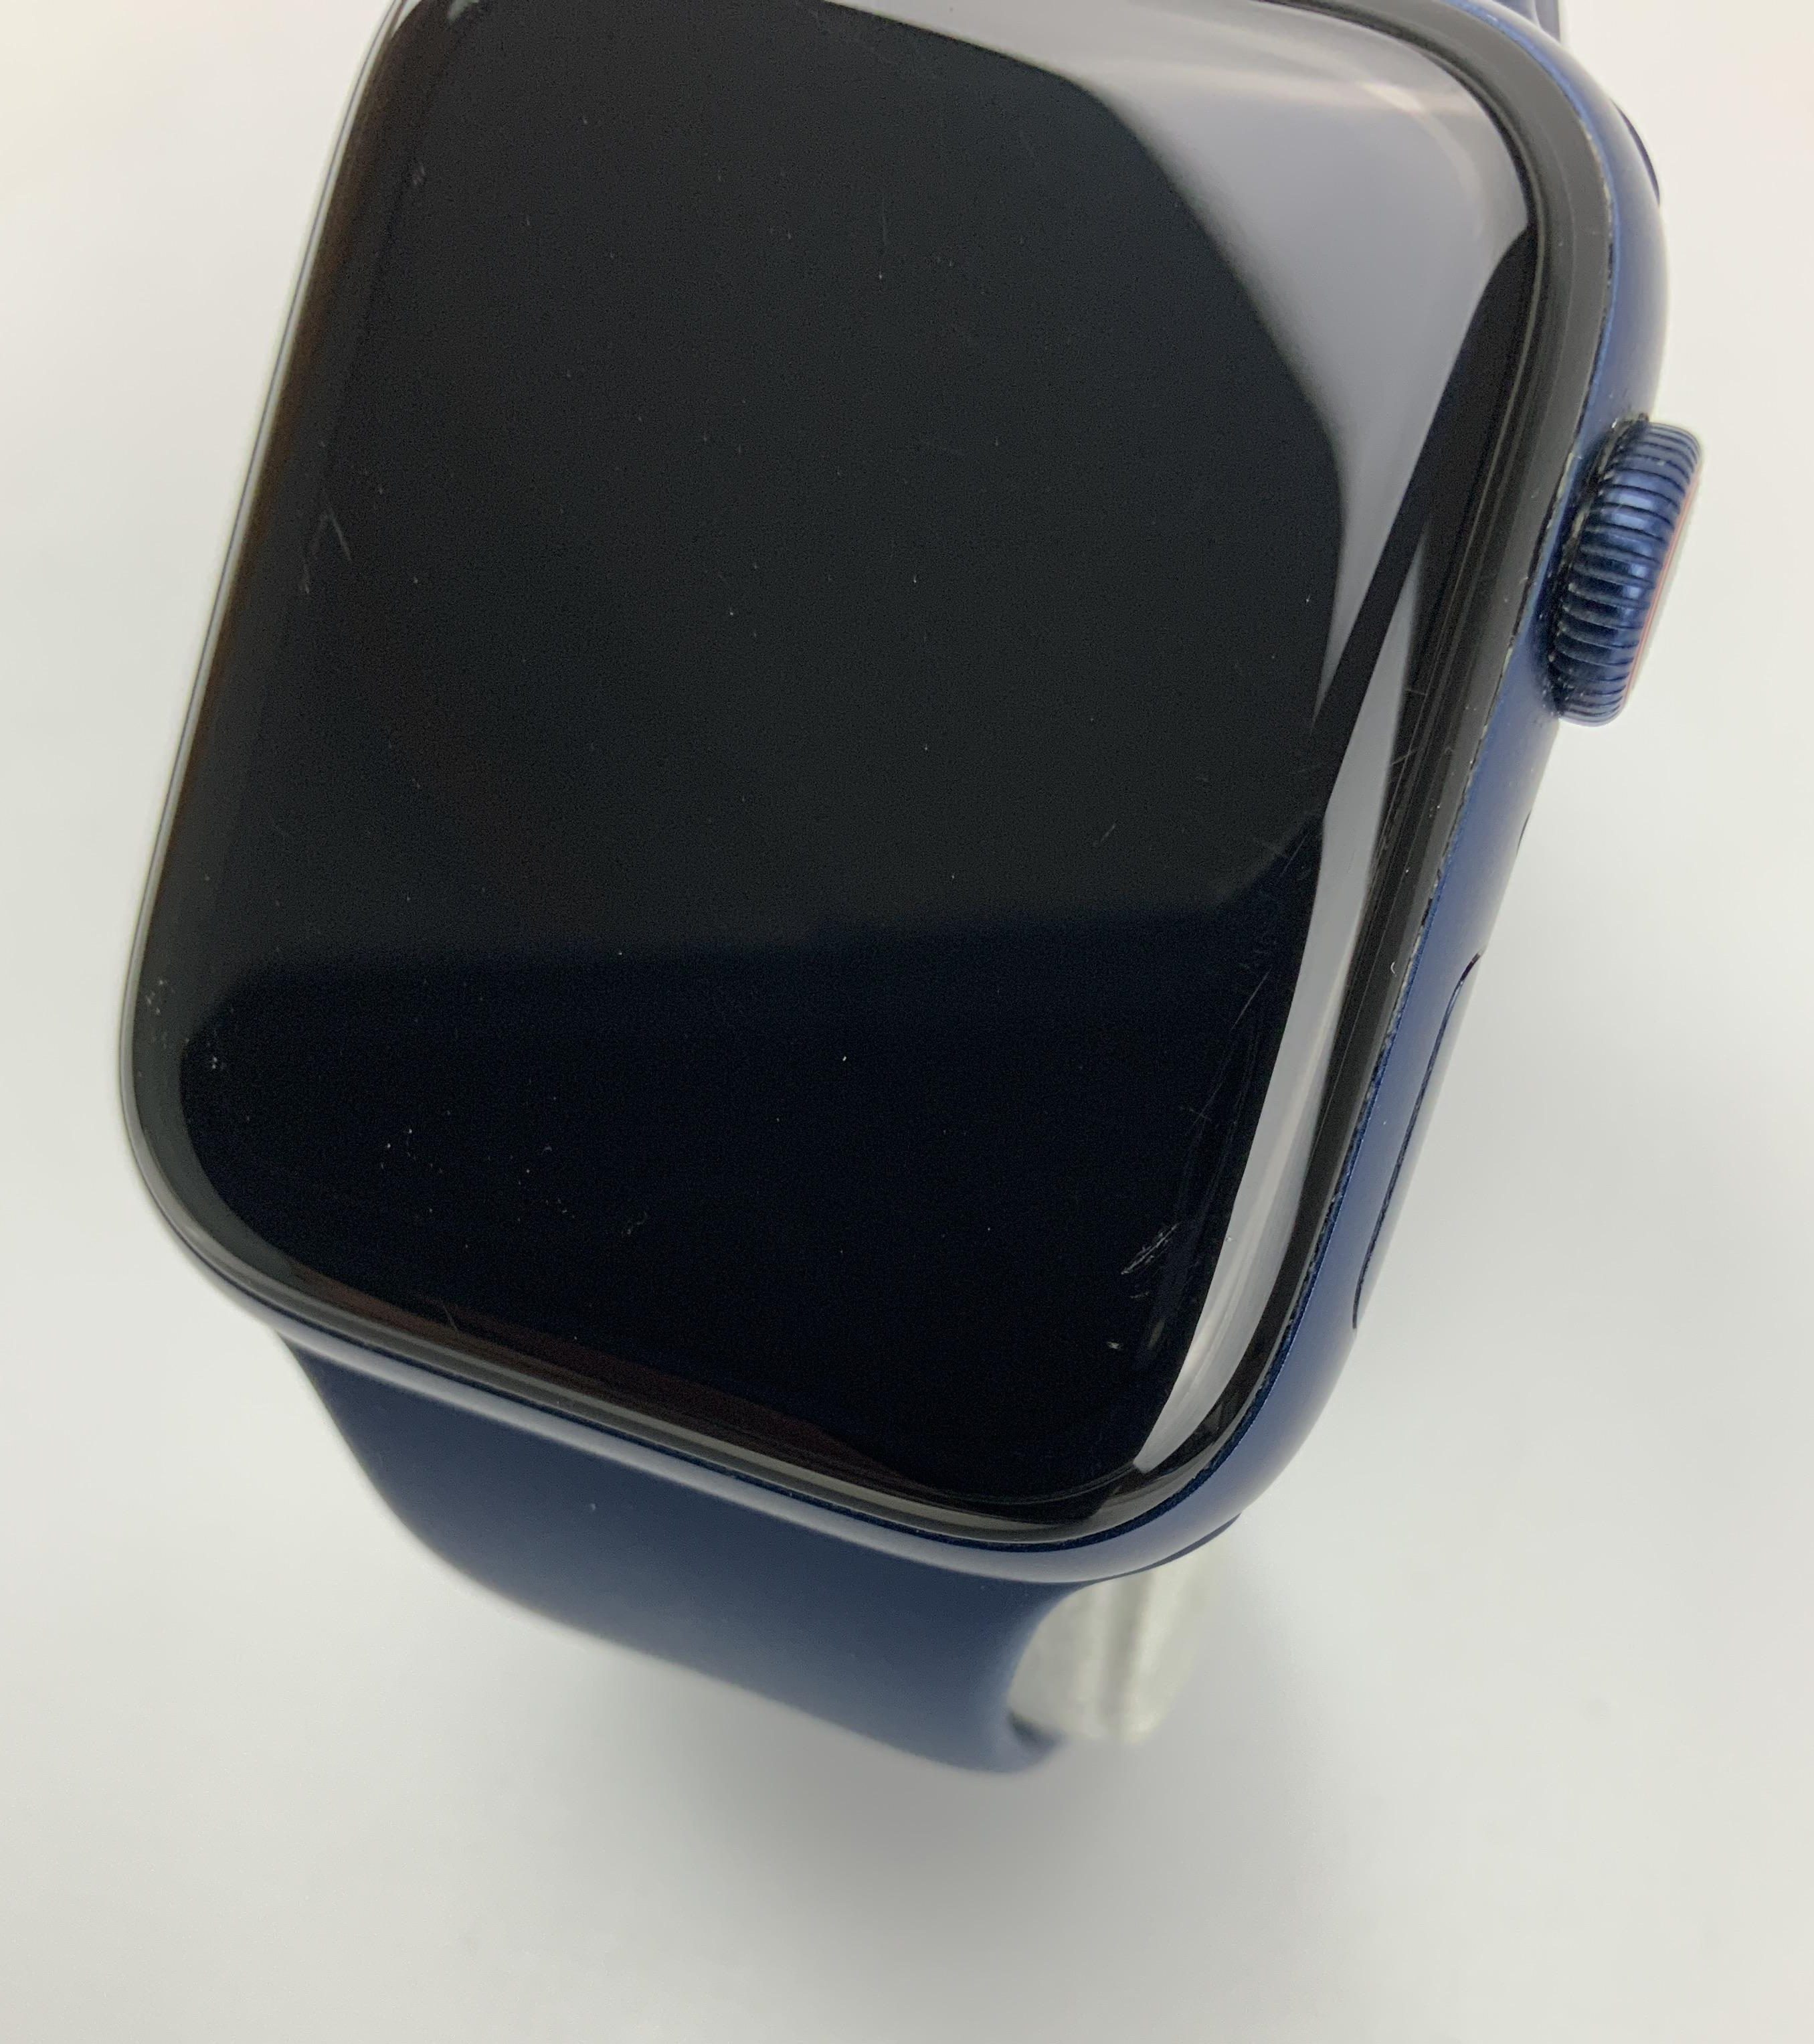 Watch Series 6 Aluminum Cellular (44mm), Blue, imagen 4